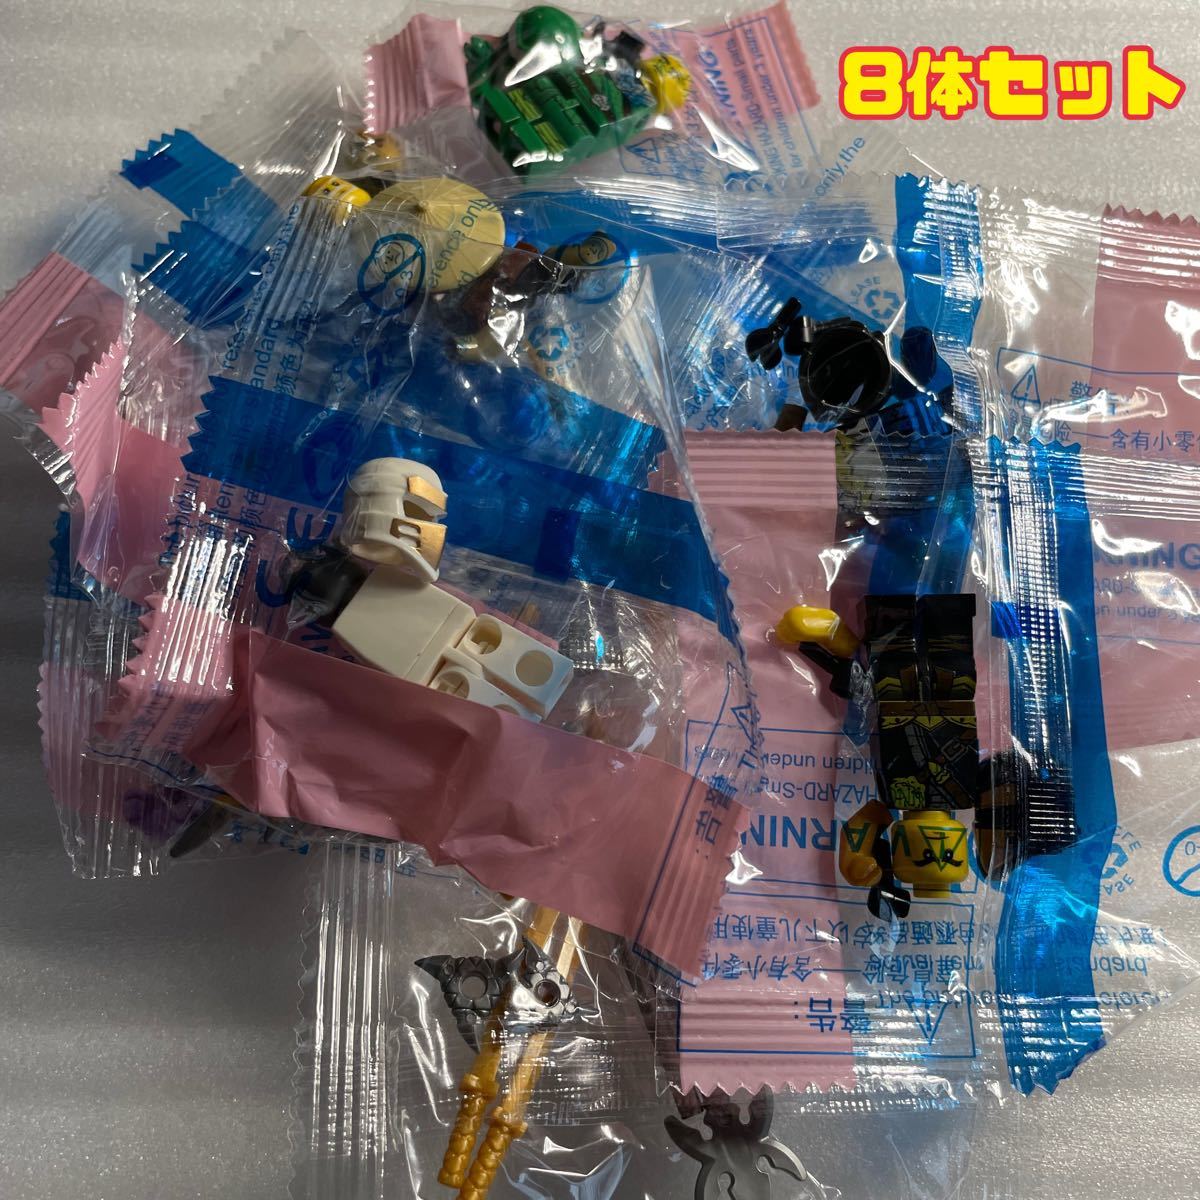 ニンジャゴー 8体セット ミニフィグ レゴ互換品 LEGO 【送料無料】